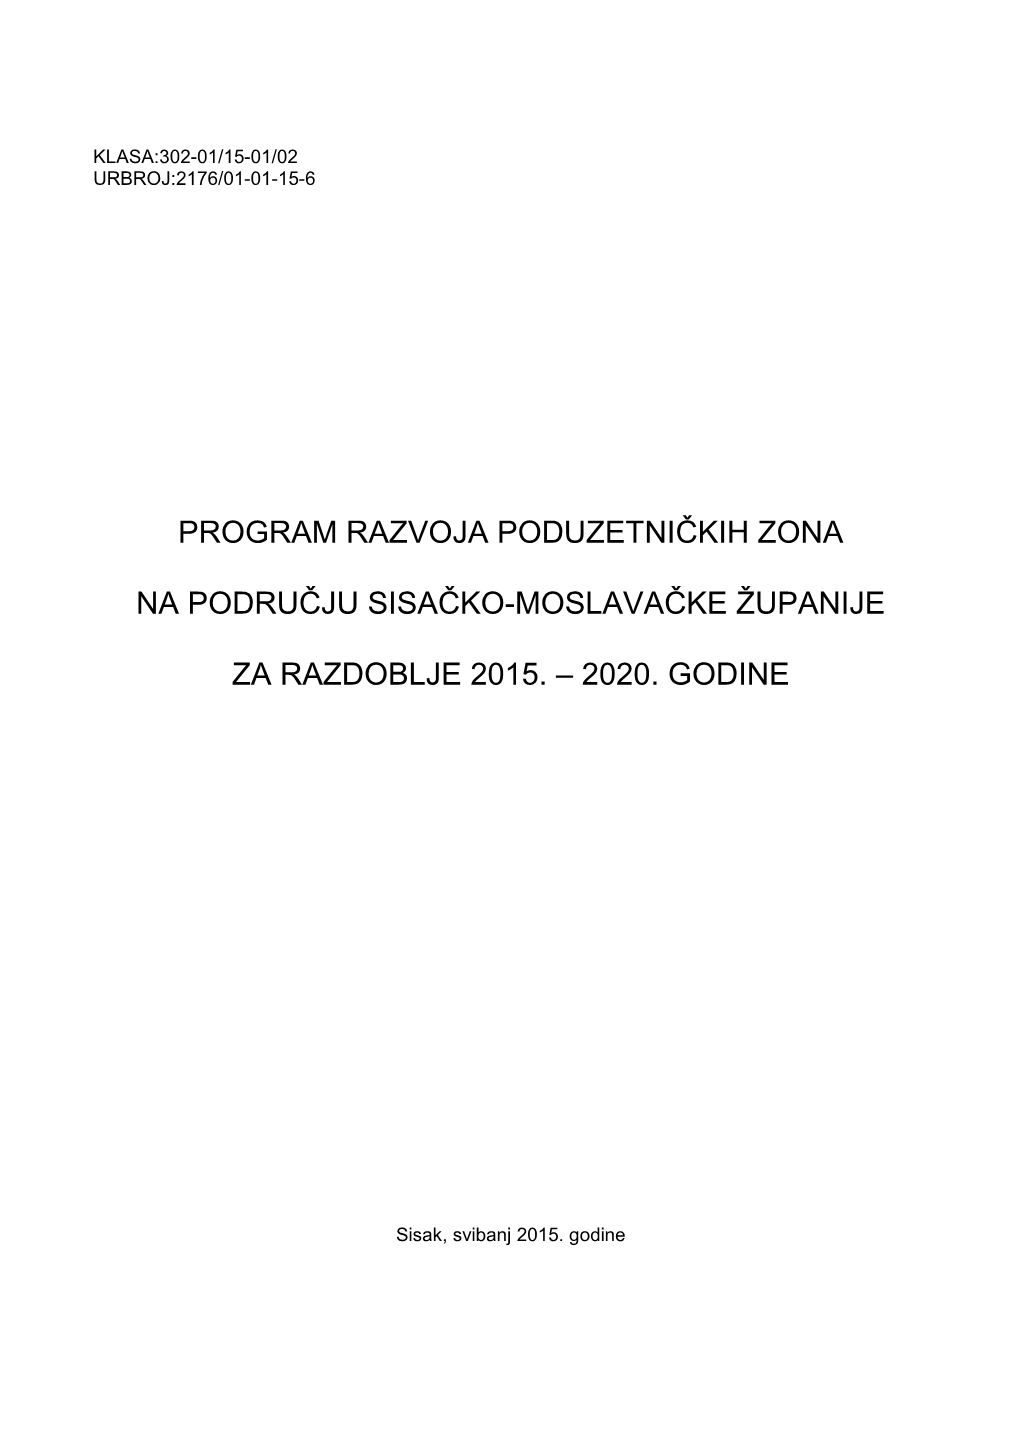 Program Razvoja Poduzetničkih Zona Na Području Sisačko-Moslavačke